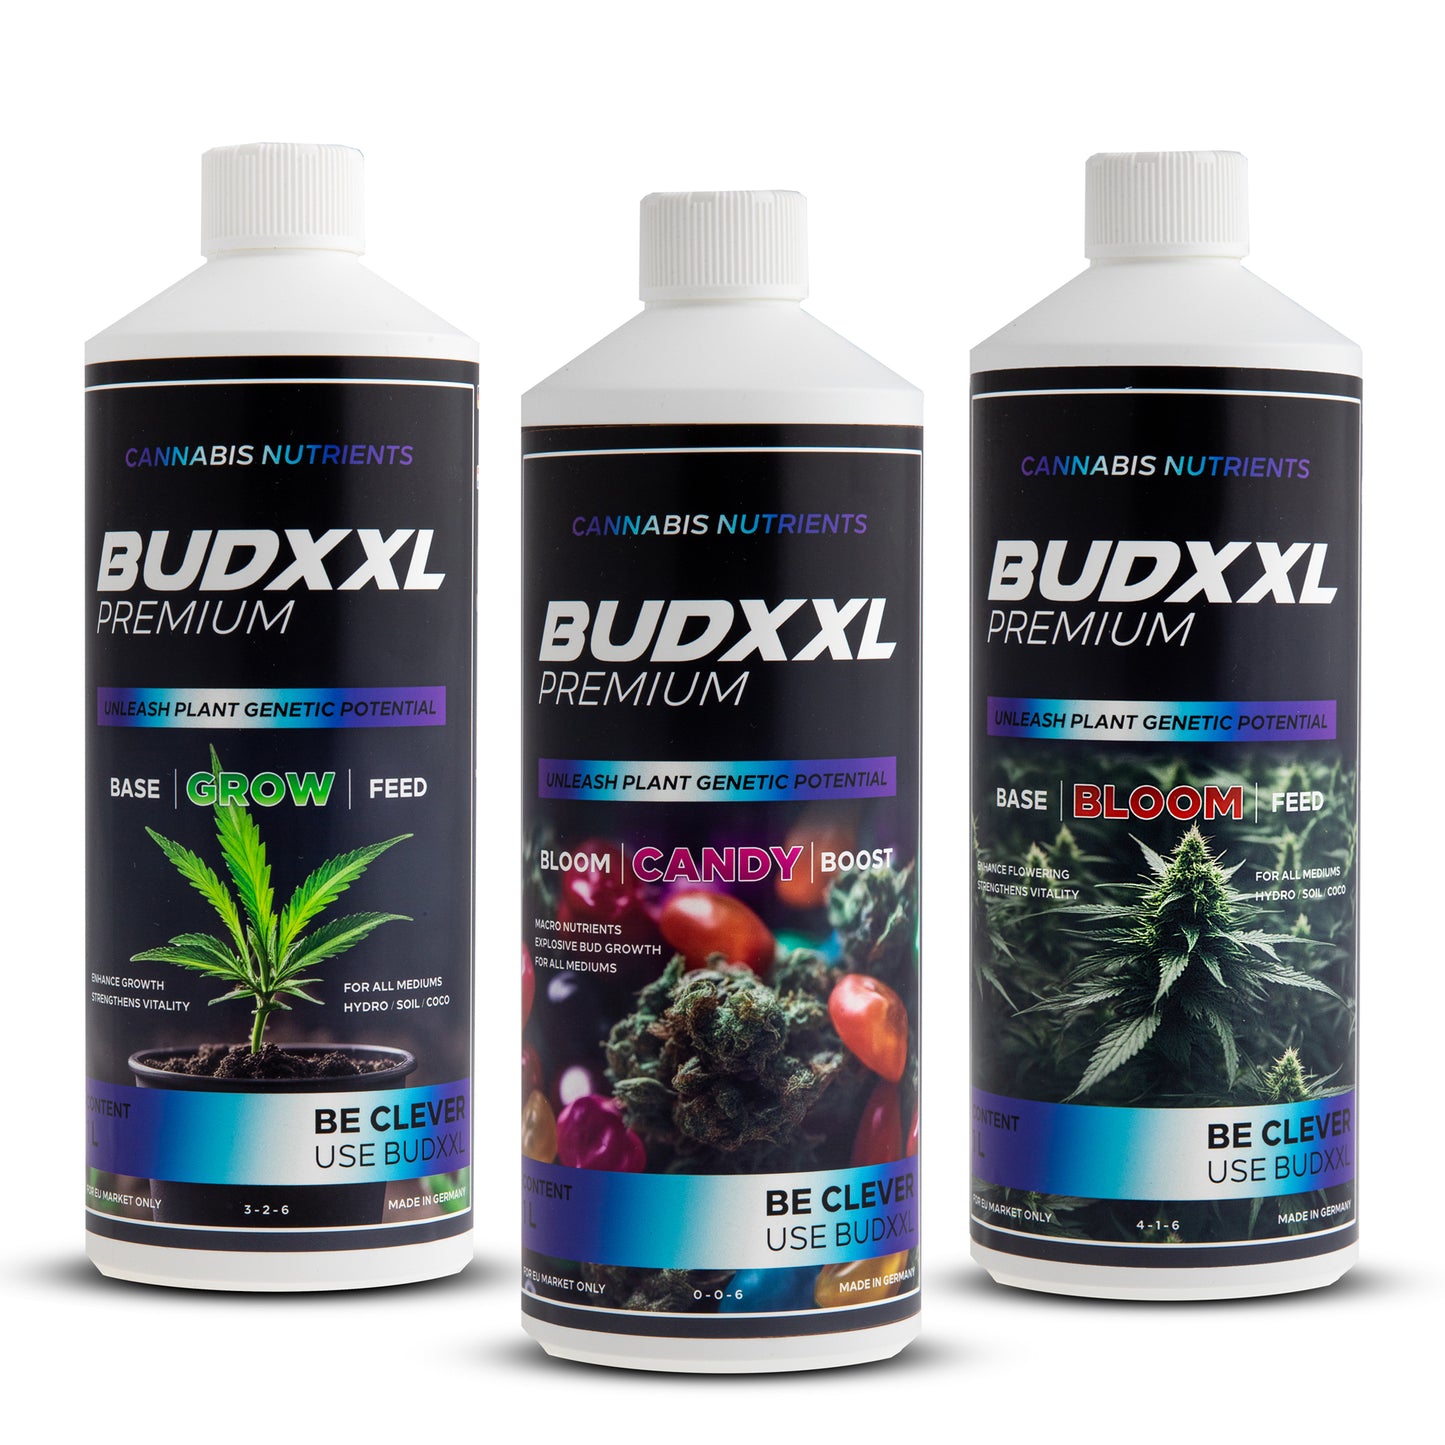 BUDXXL Premium Dünger Set - 1L Grow, 1L Bloom, 1L Candy